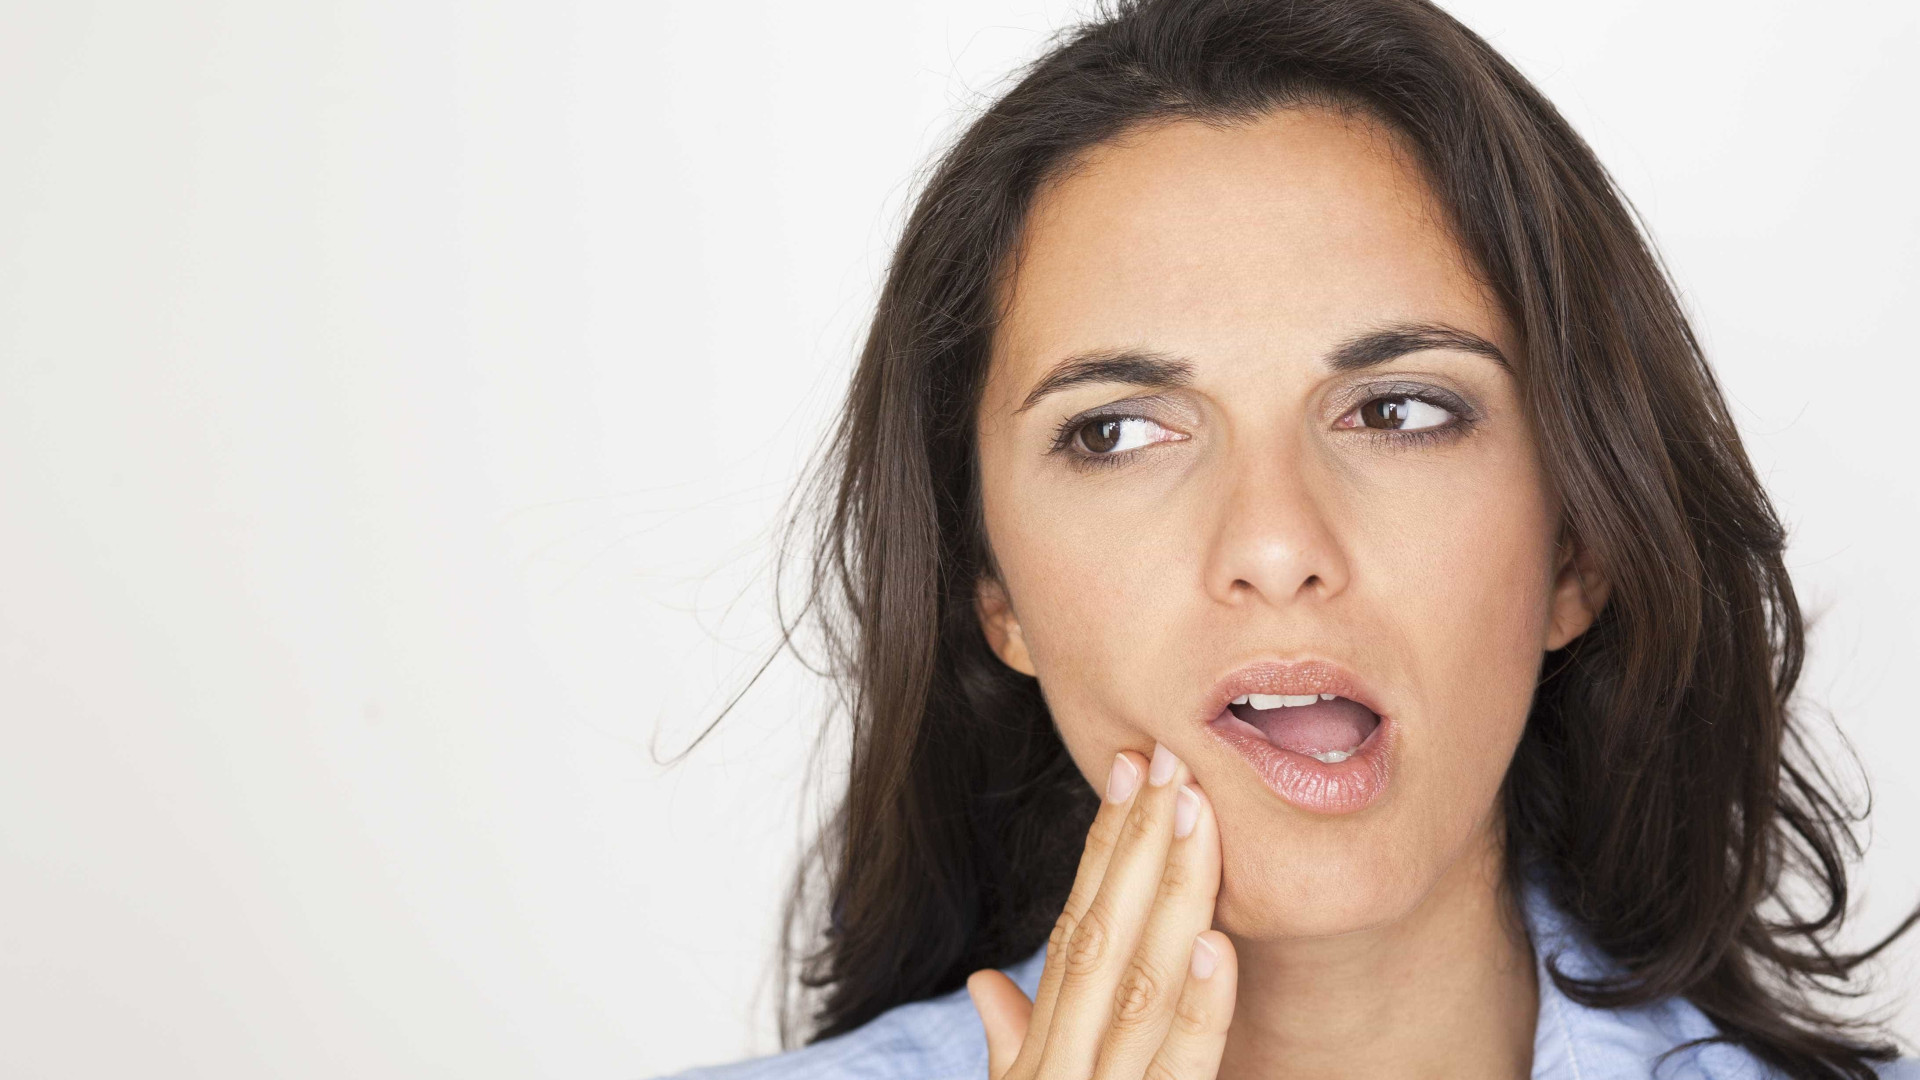 Quais são os principais causadores
de sensibilidade nos dentes?